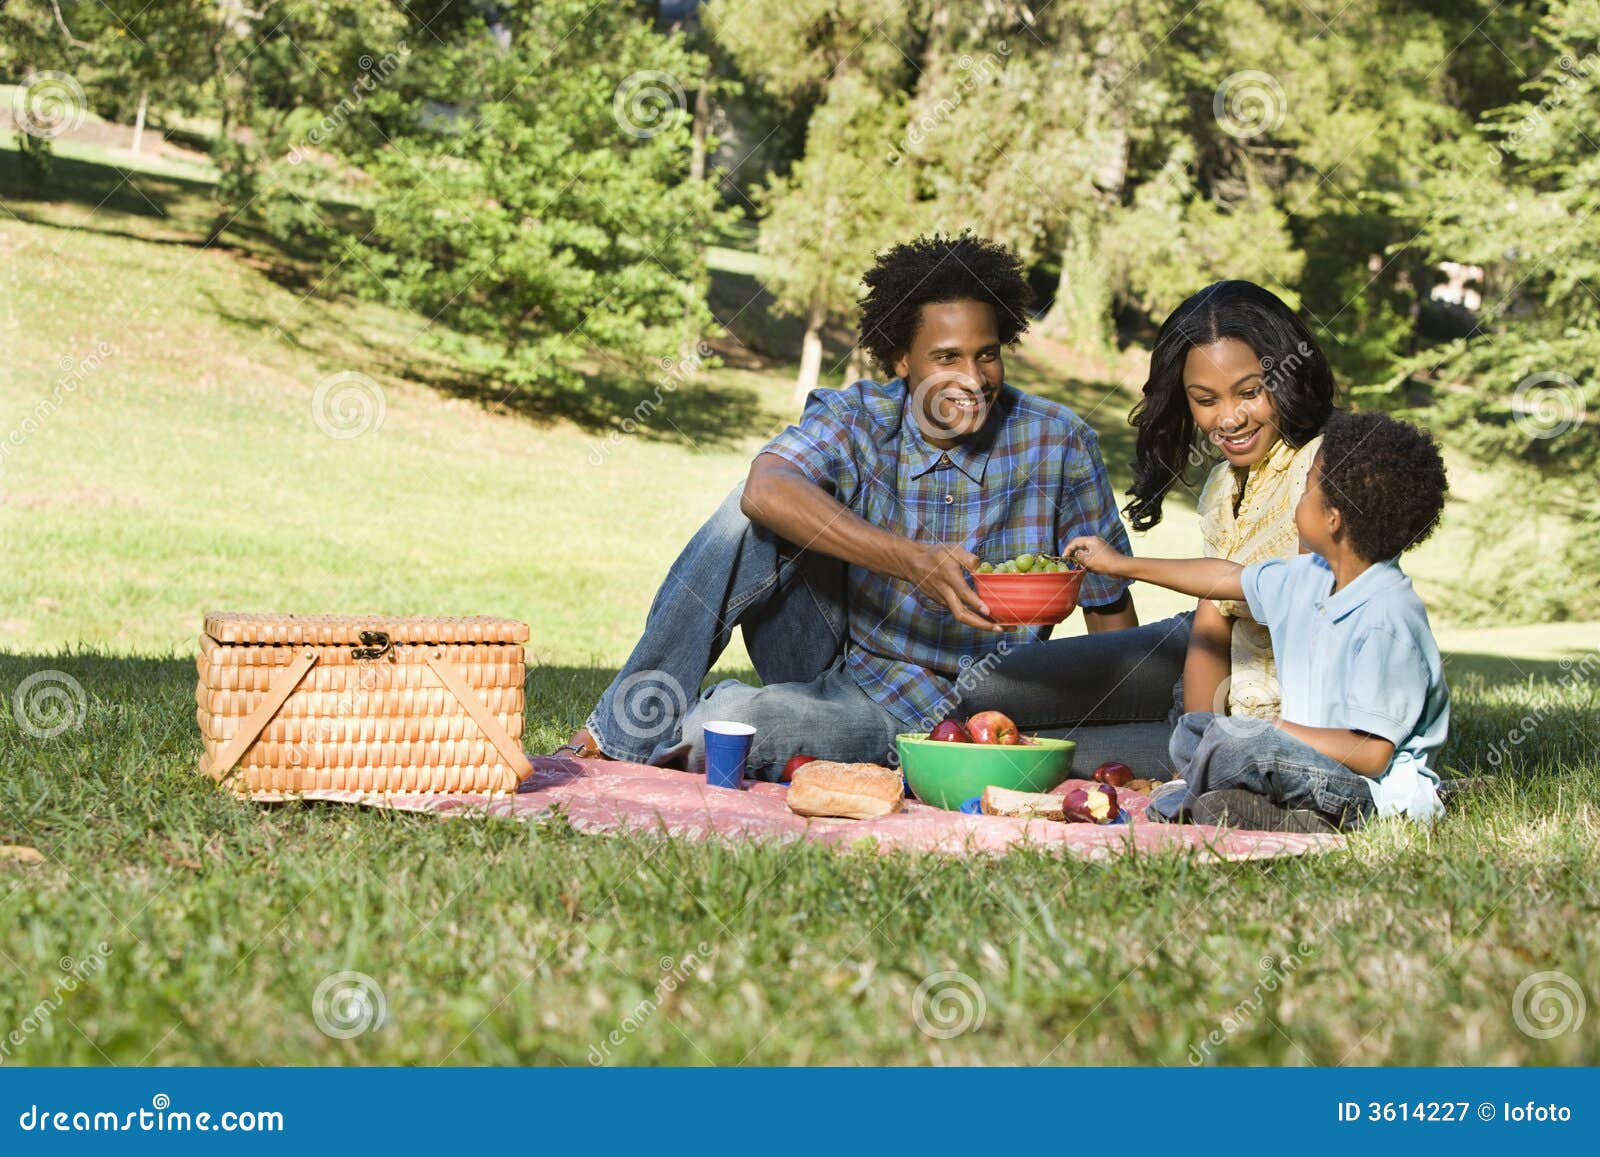 picnic in park.